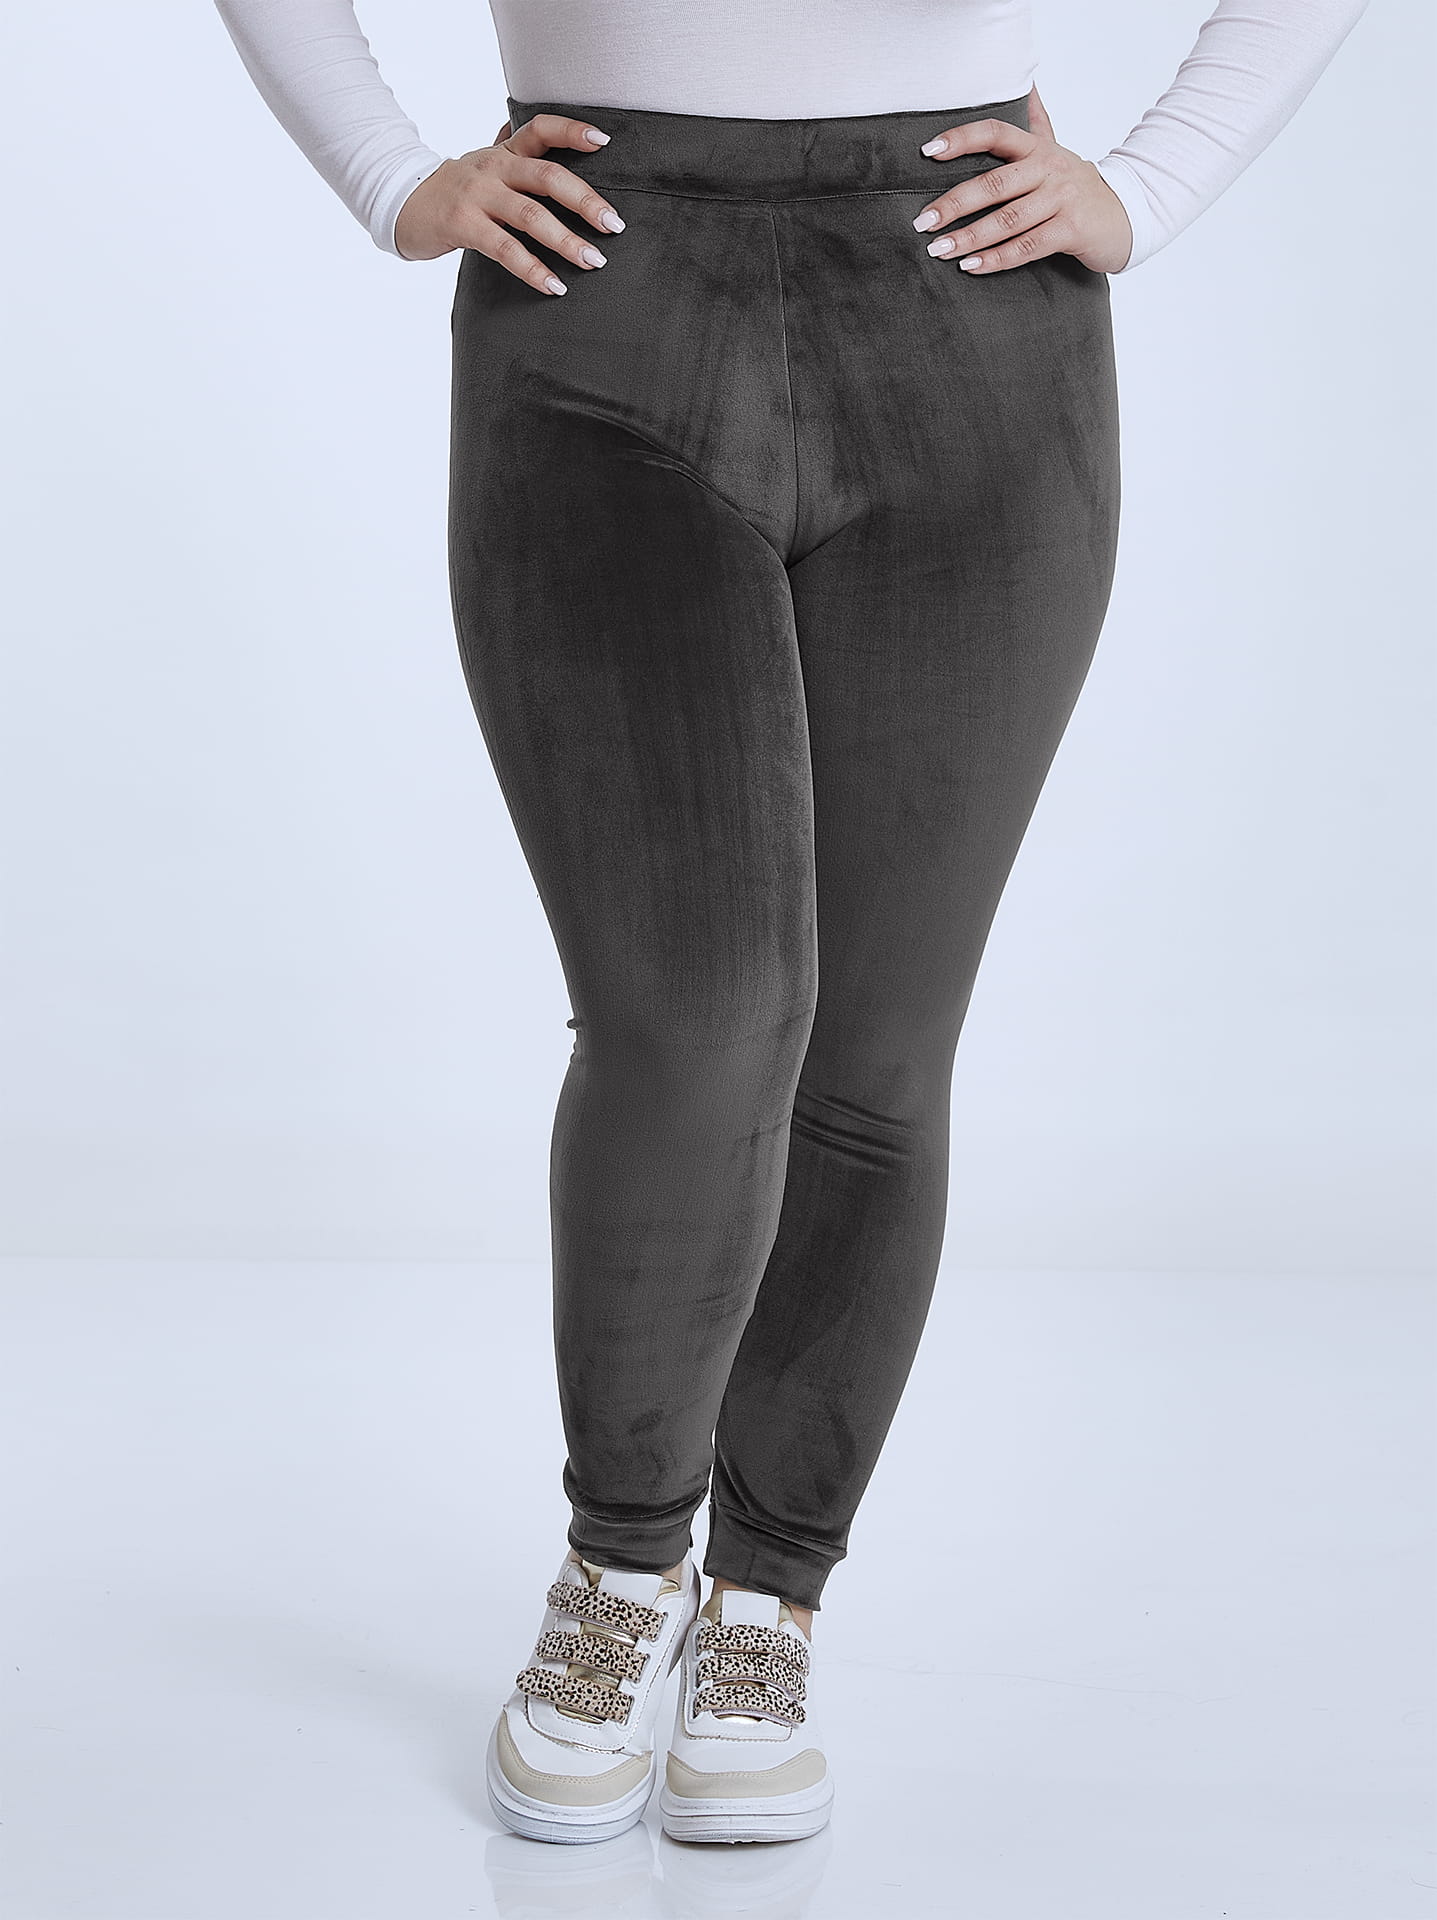 Velvet high waist leggings curvy in dark grey, 6.99€